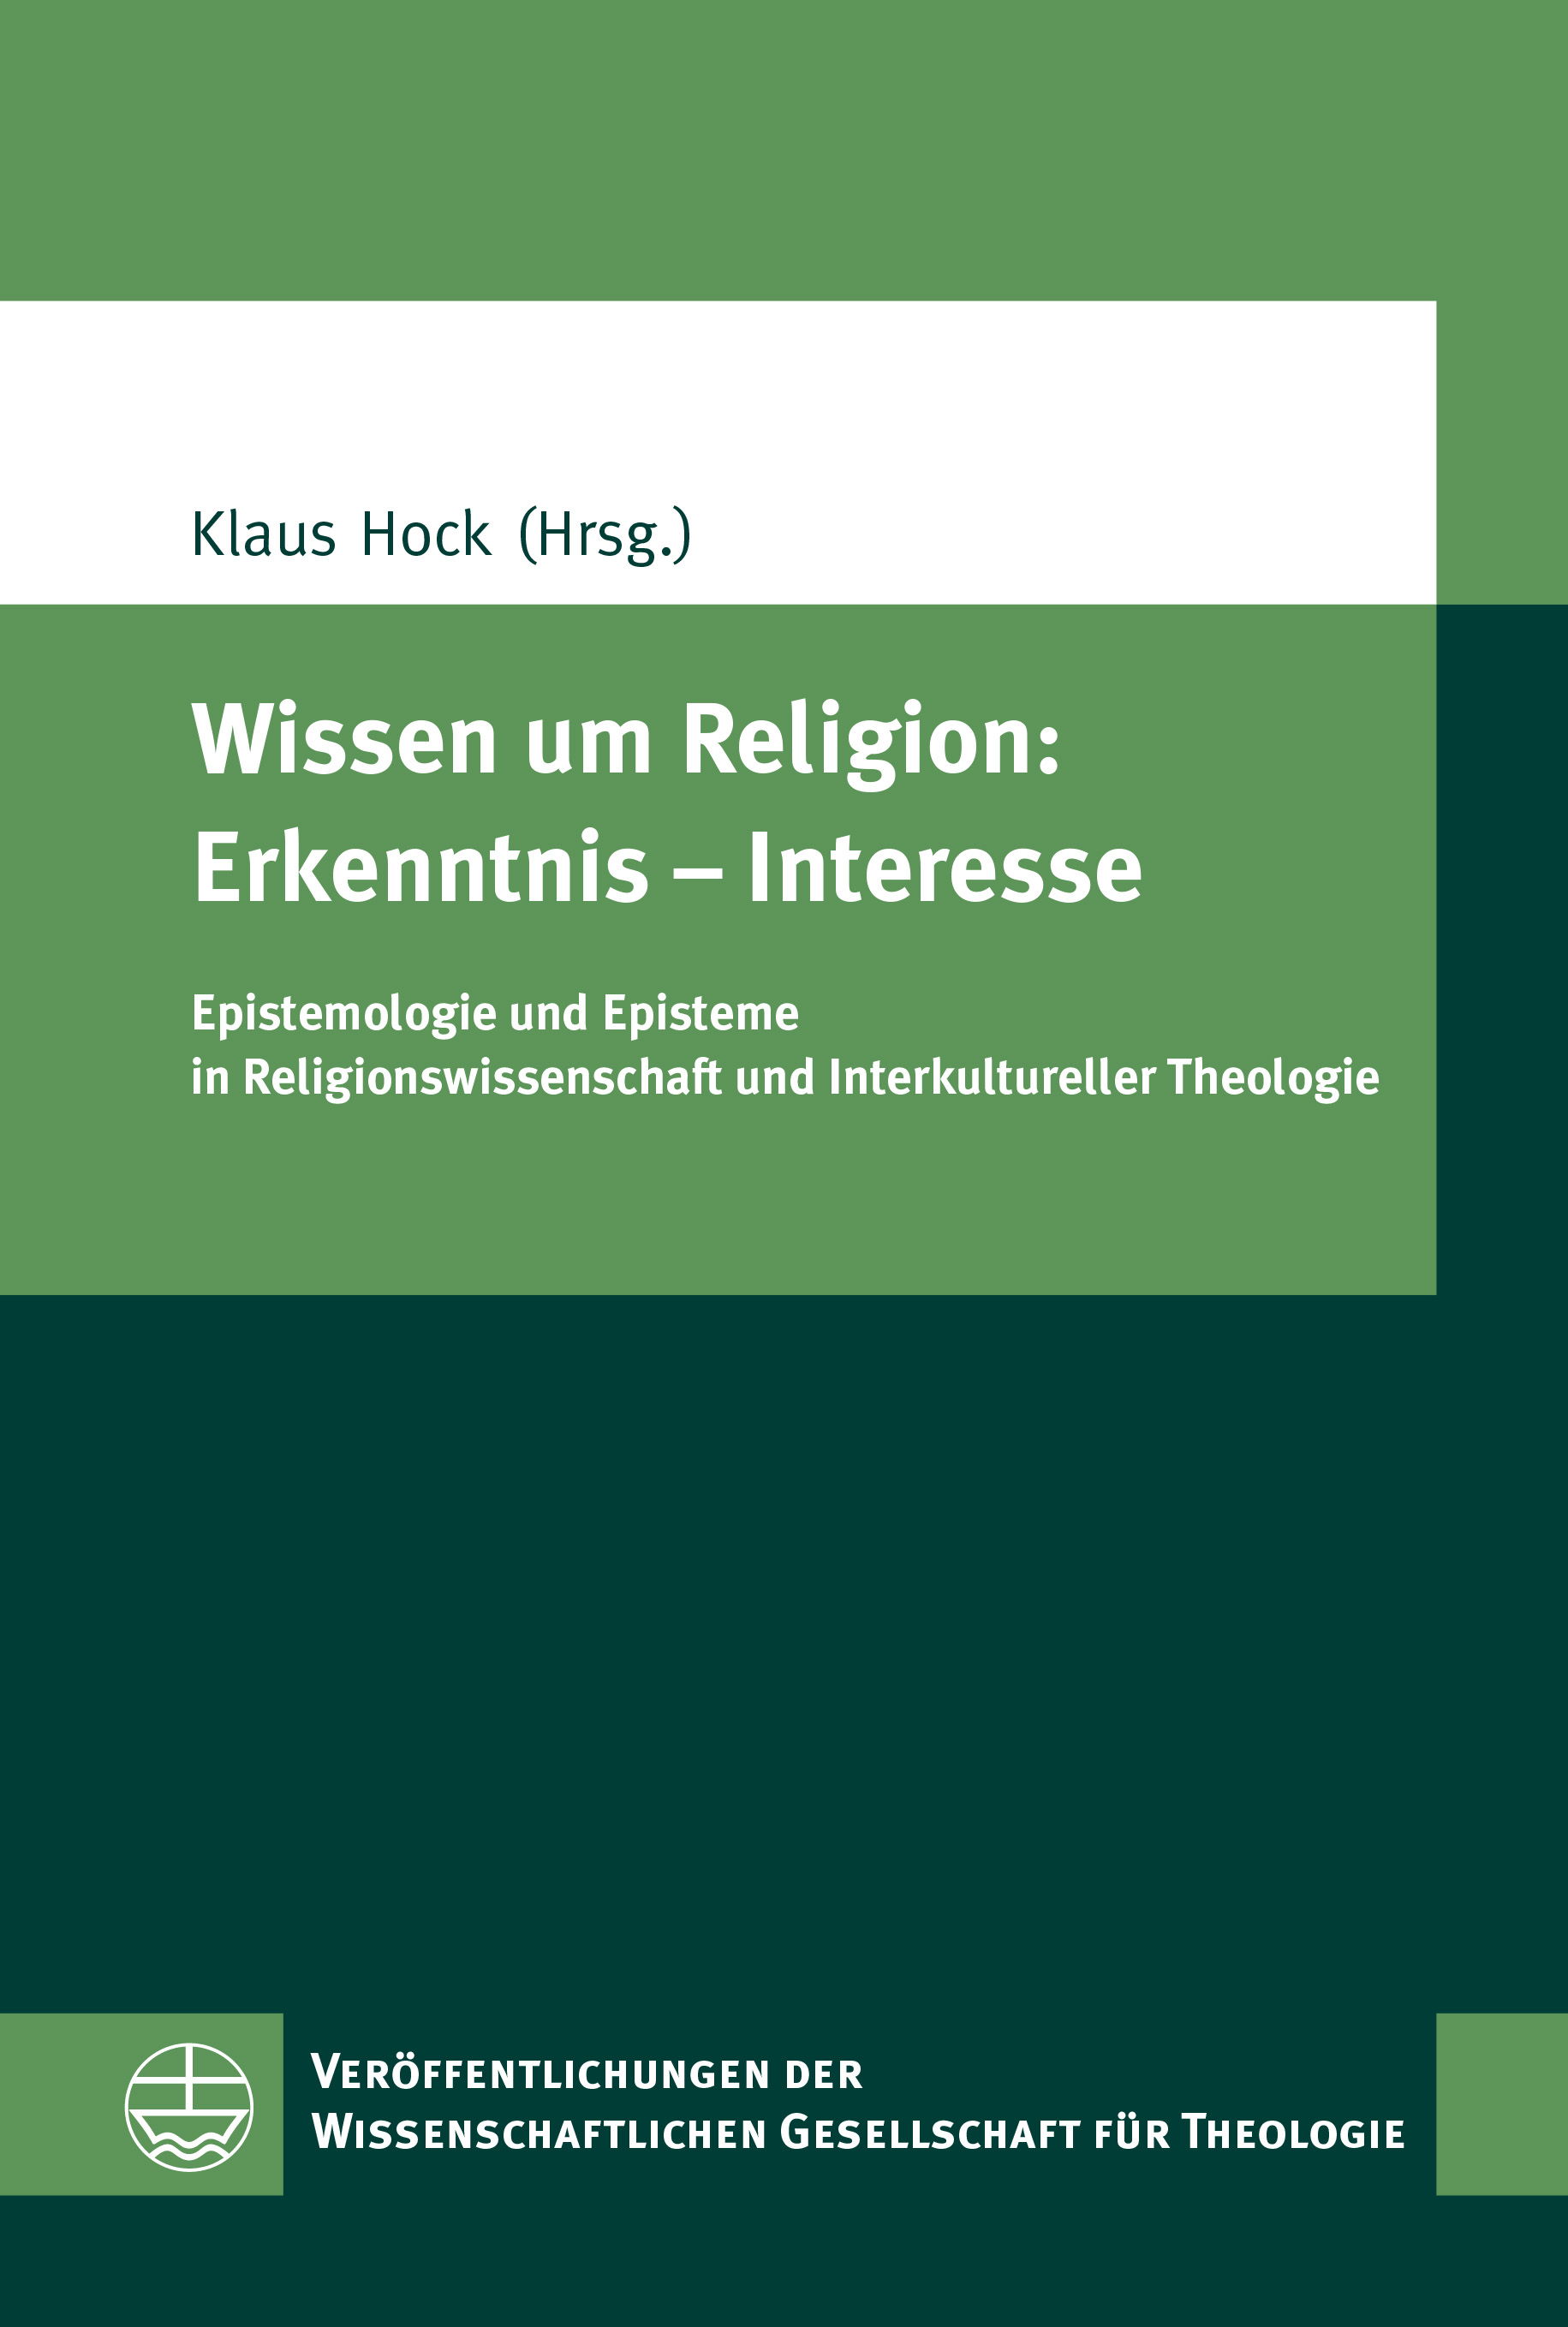 eva cover 06690 VWGTh 64 Hock Wissen Religion Erkenntnis Interesse